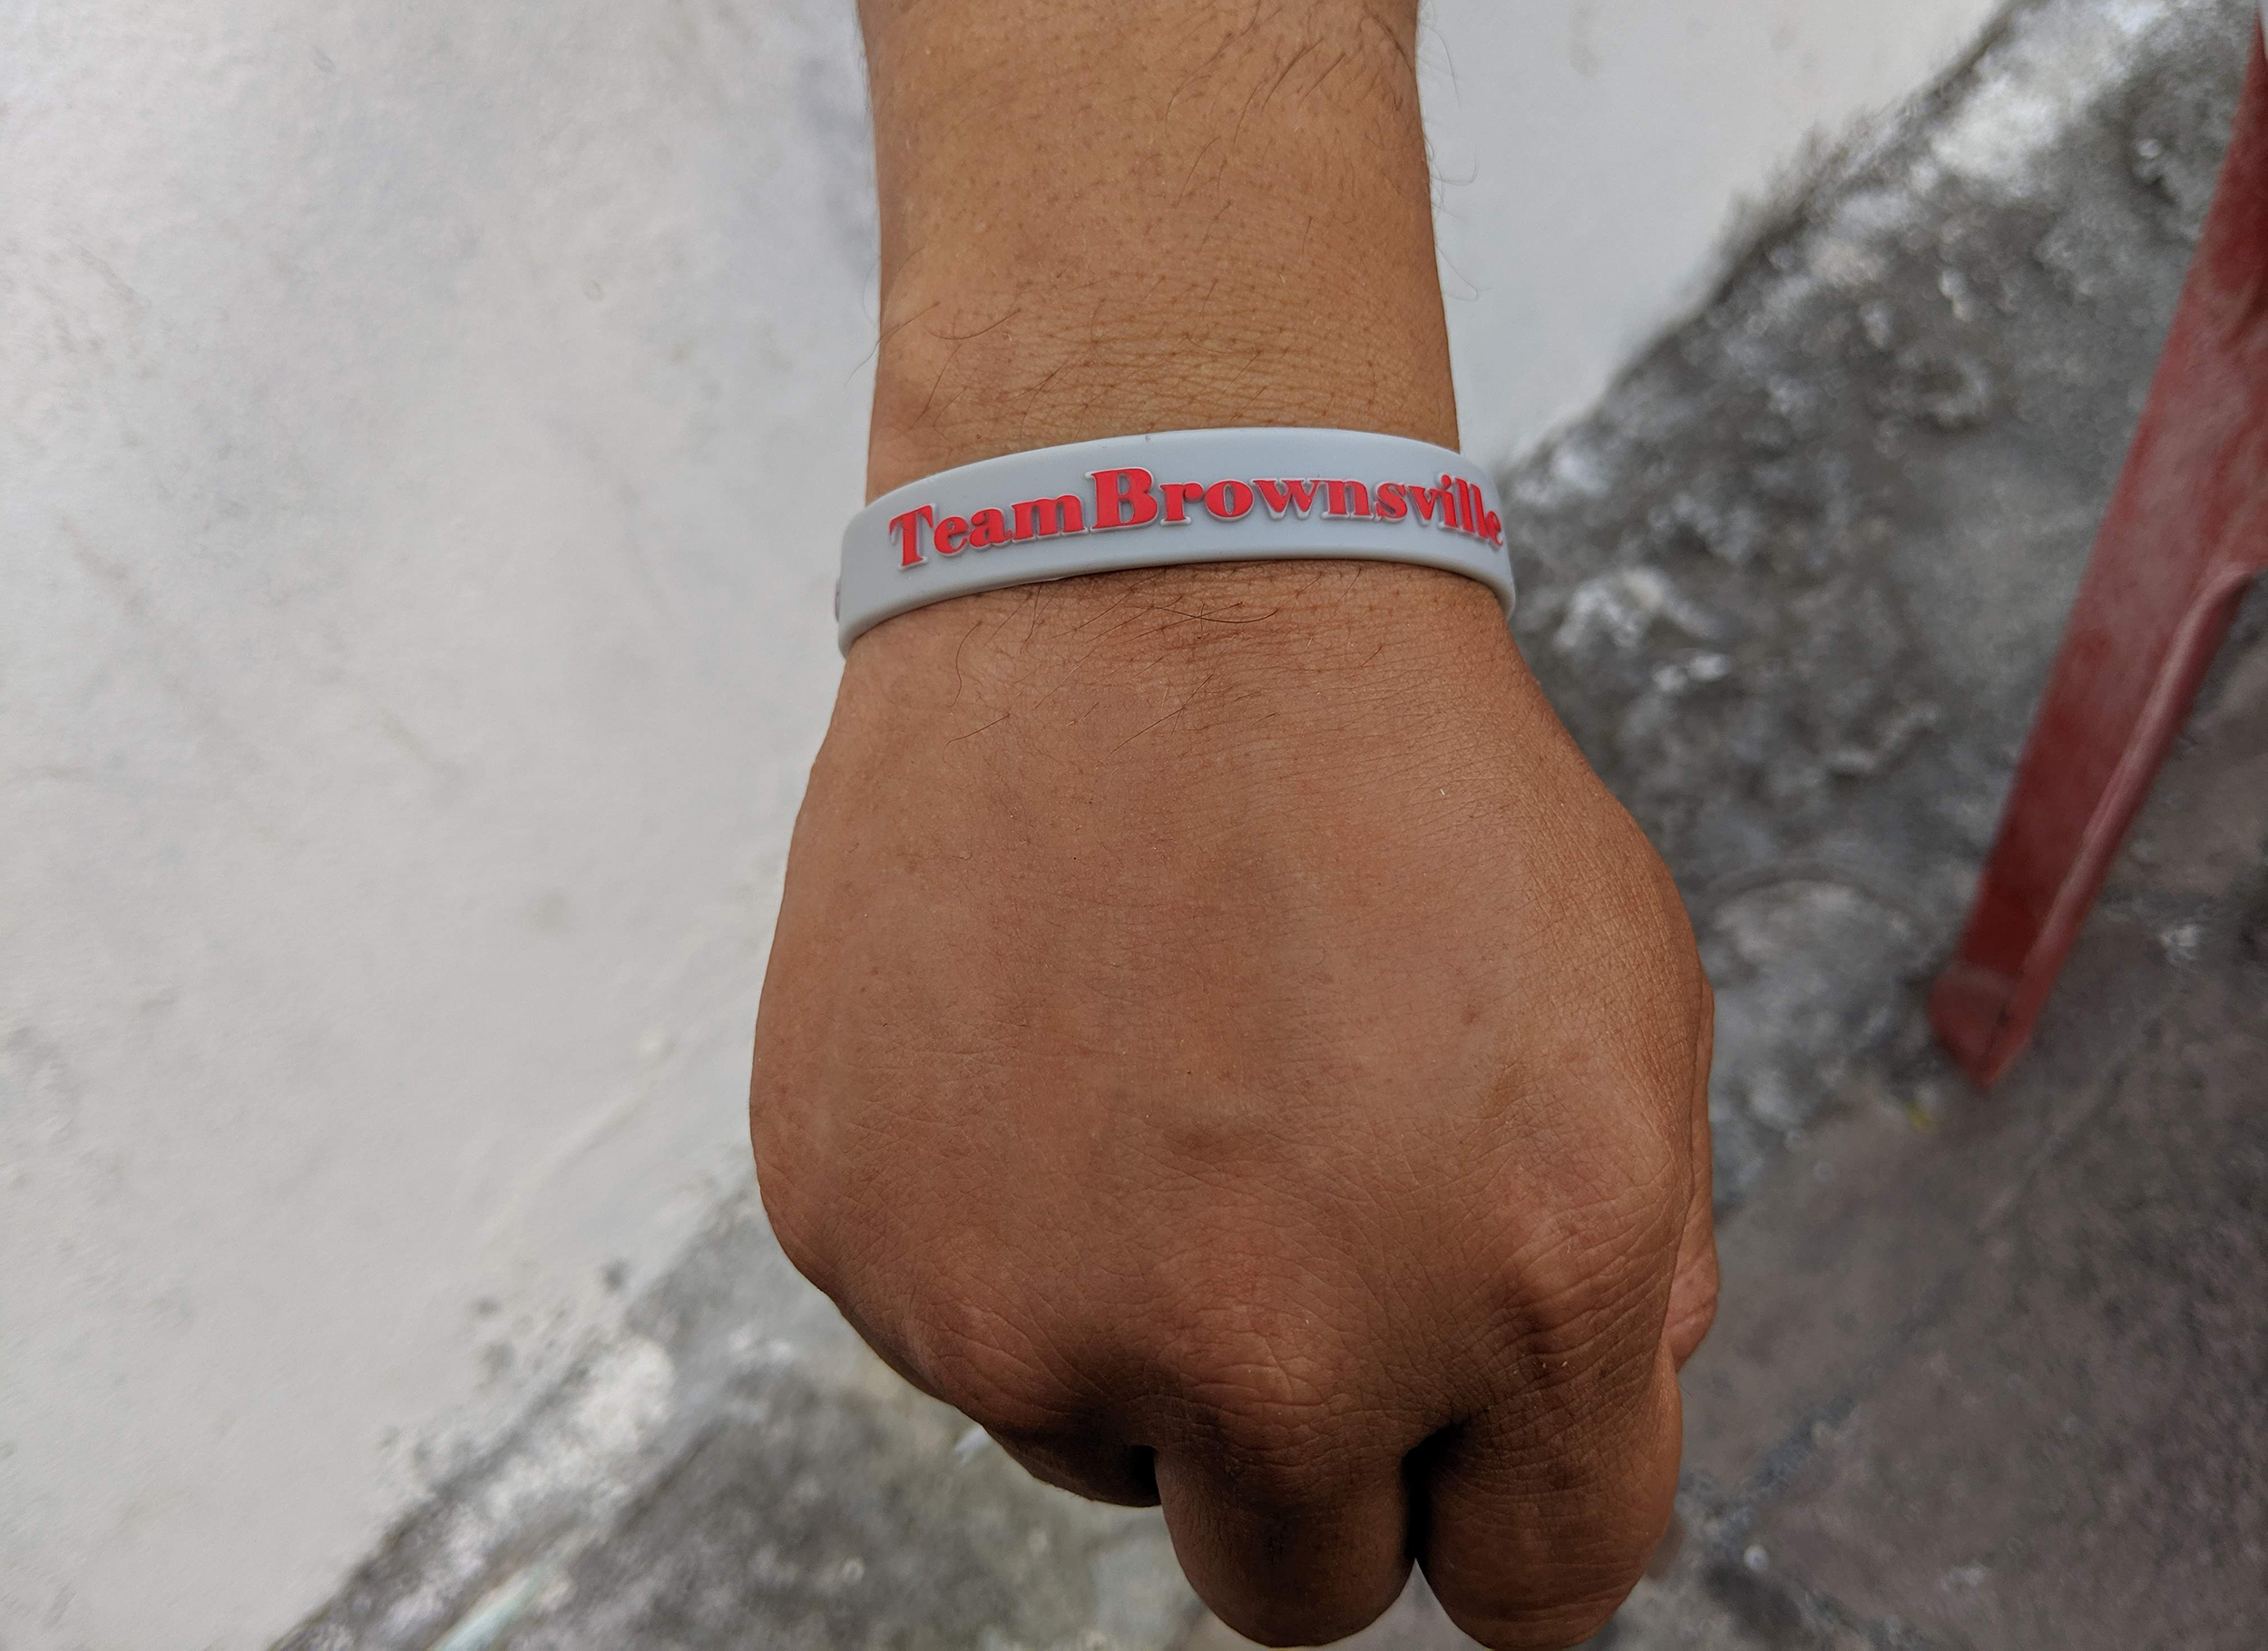 An asylum-seeker in Matamoros sports a Team Brownsville bracelet.